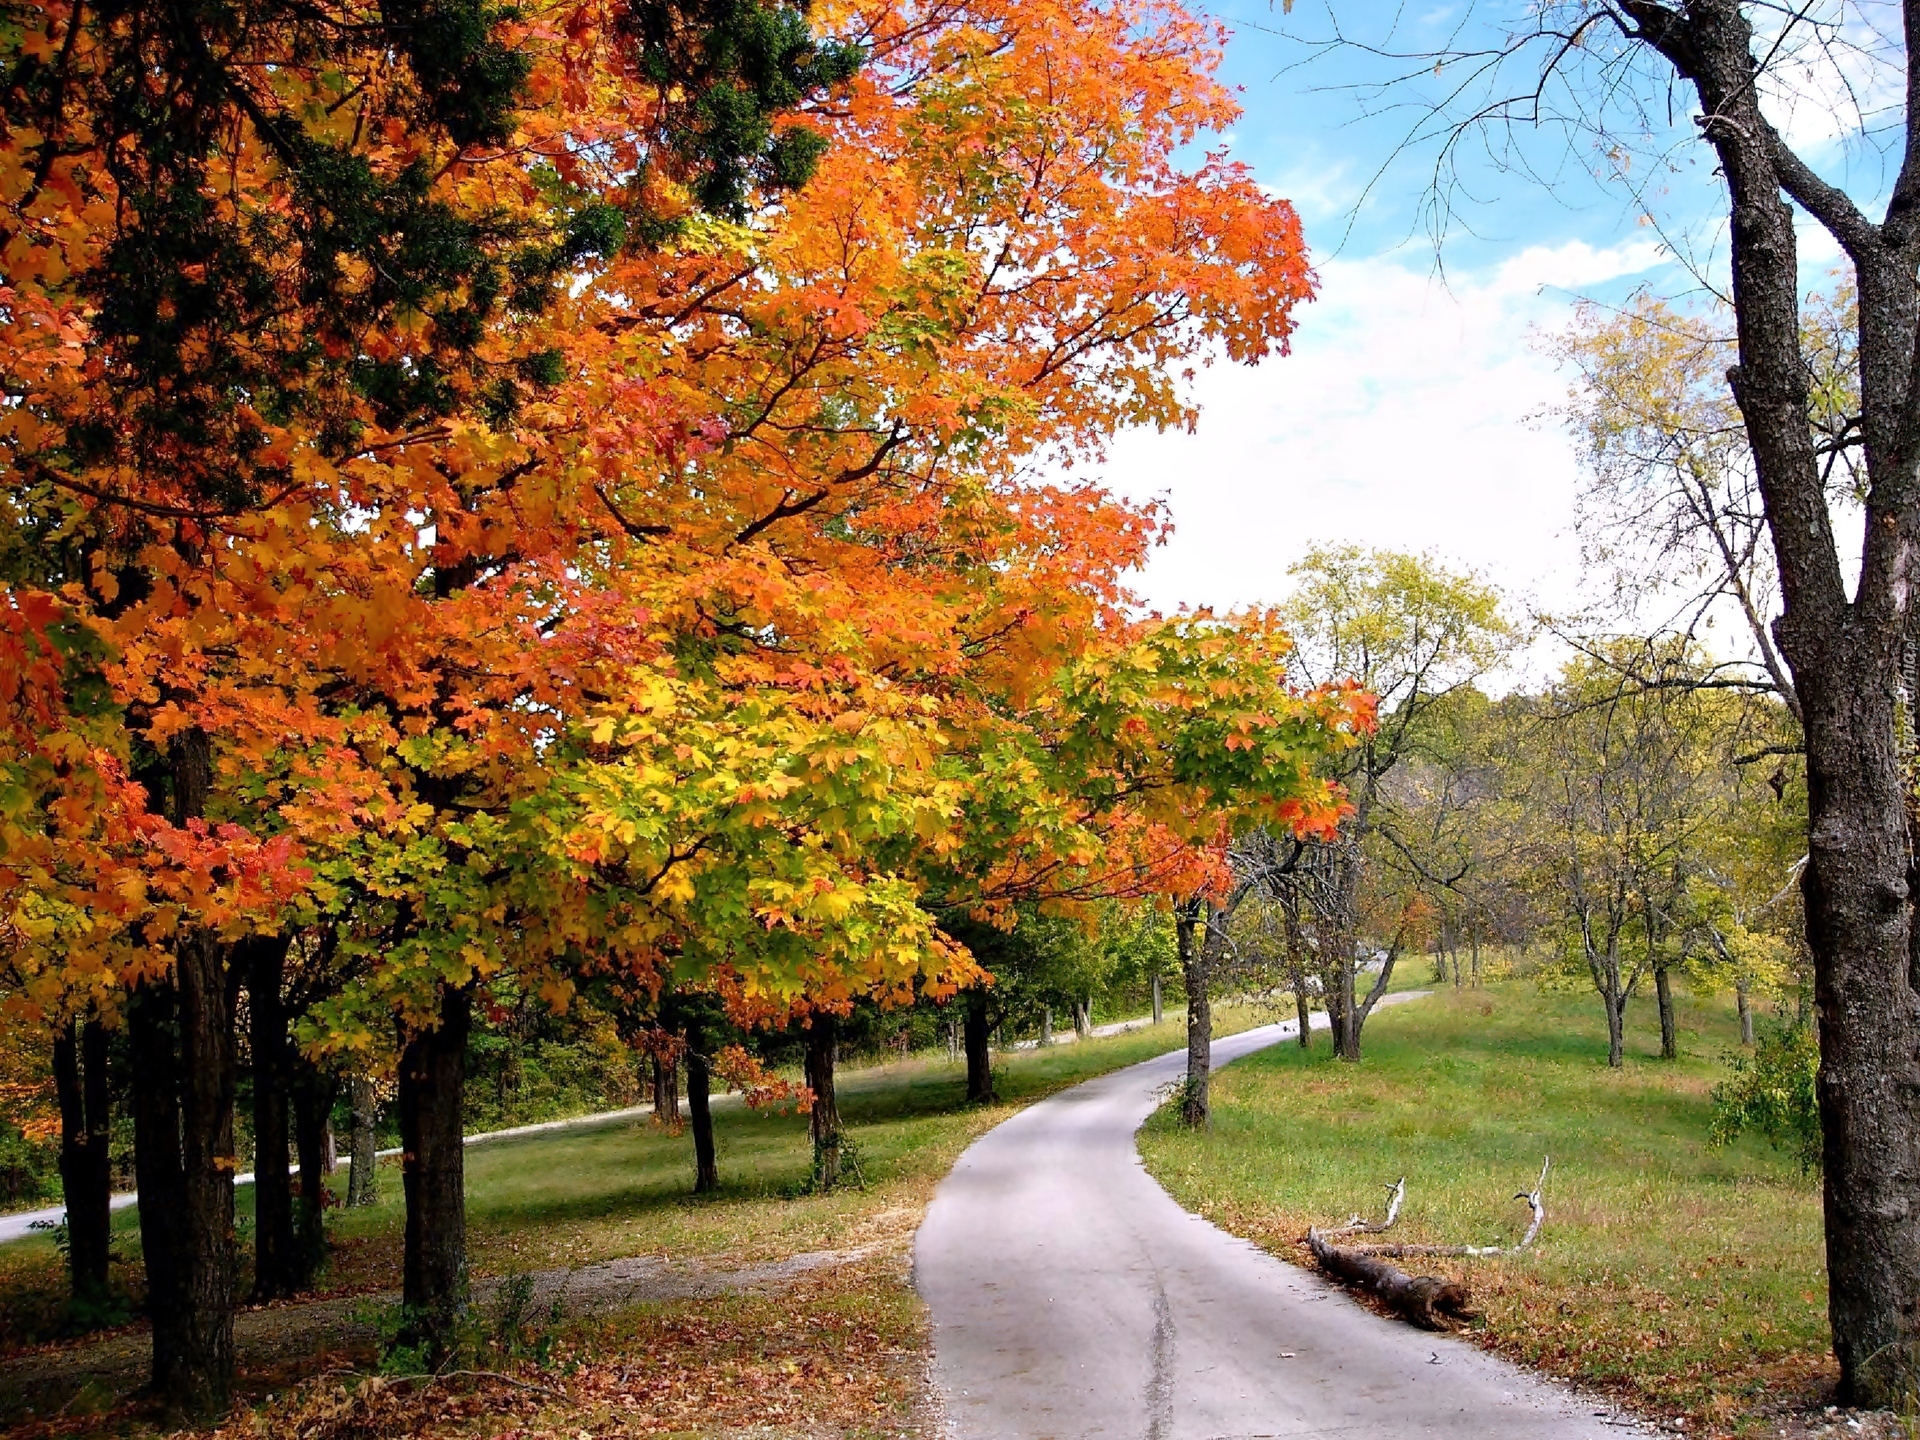 В парк пришла осень. Осенний парк. Осень в парке. Золотая осень в парке. Осенний лес в парке.